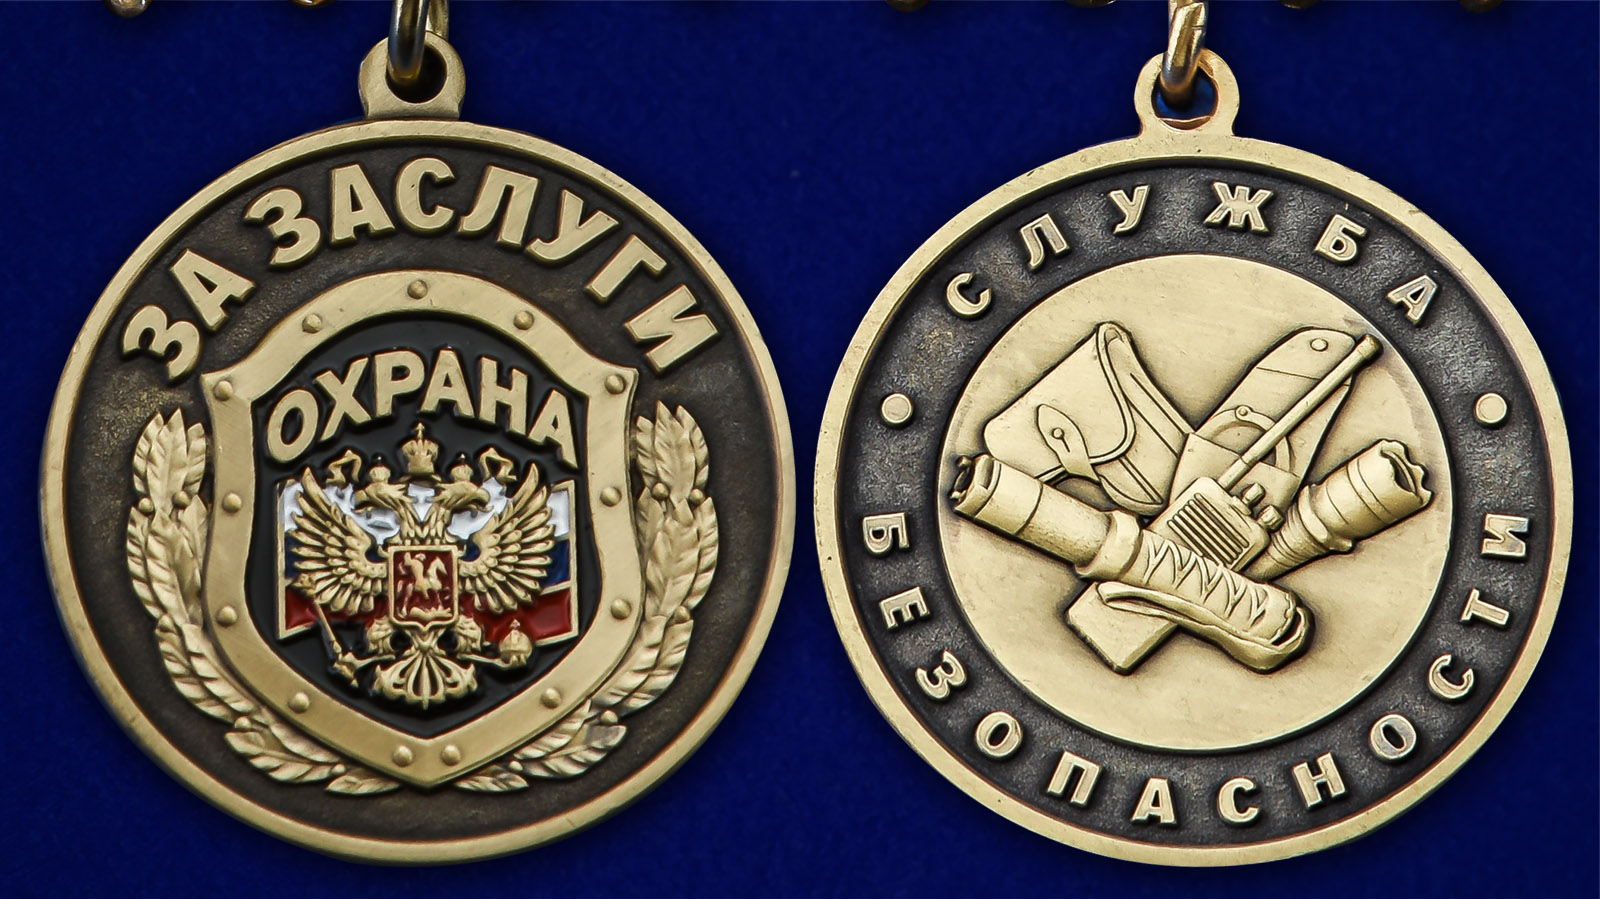 Описание медали Службы безопасности "За заслуги" - аверс и реверс